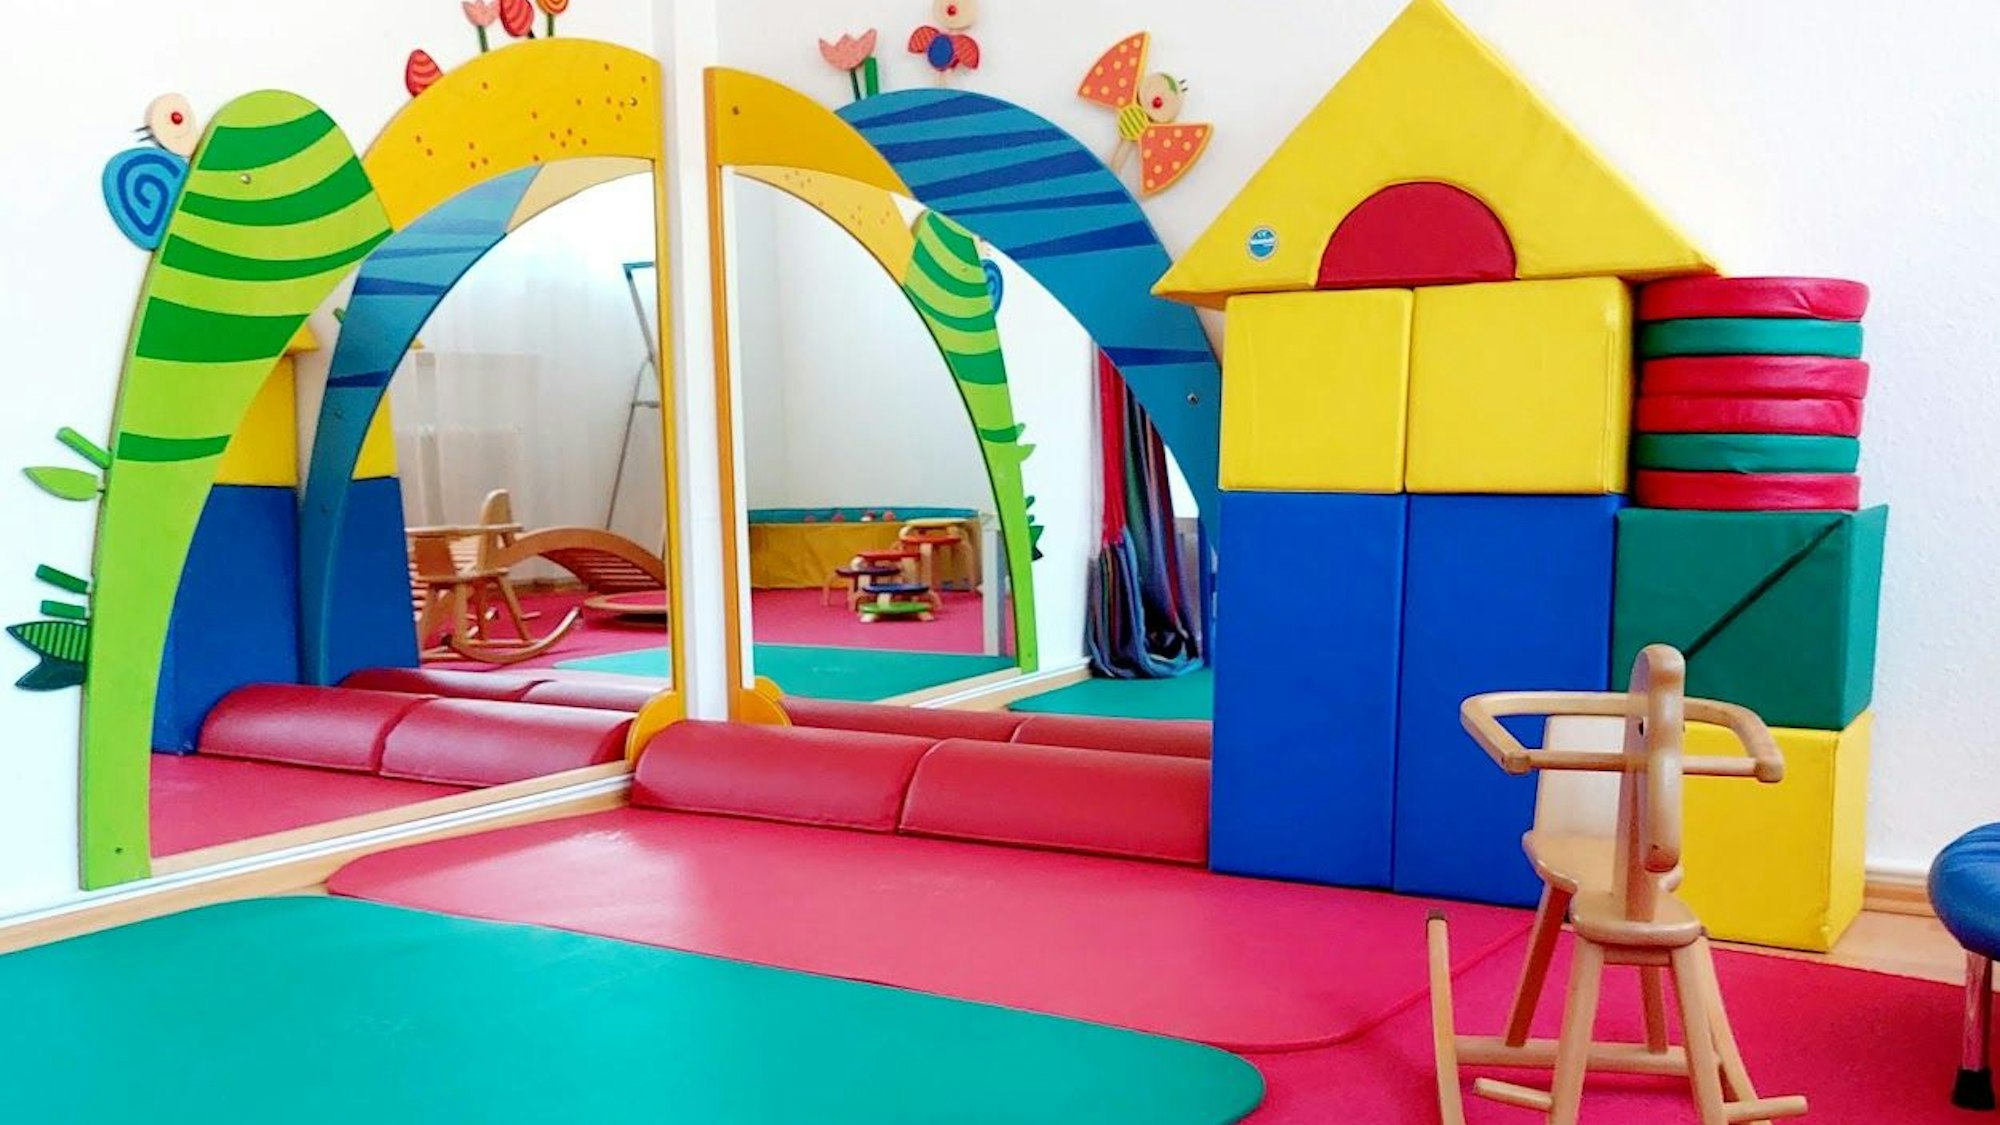 Ein Raum für Kinder mit bunten Matten und überdimensonal großen Bauklötzen, einem Schaukelpferd und großen Spiegeln.